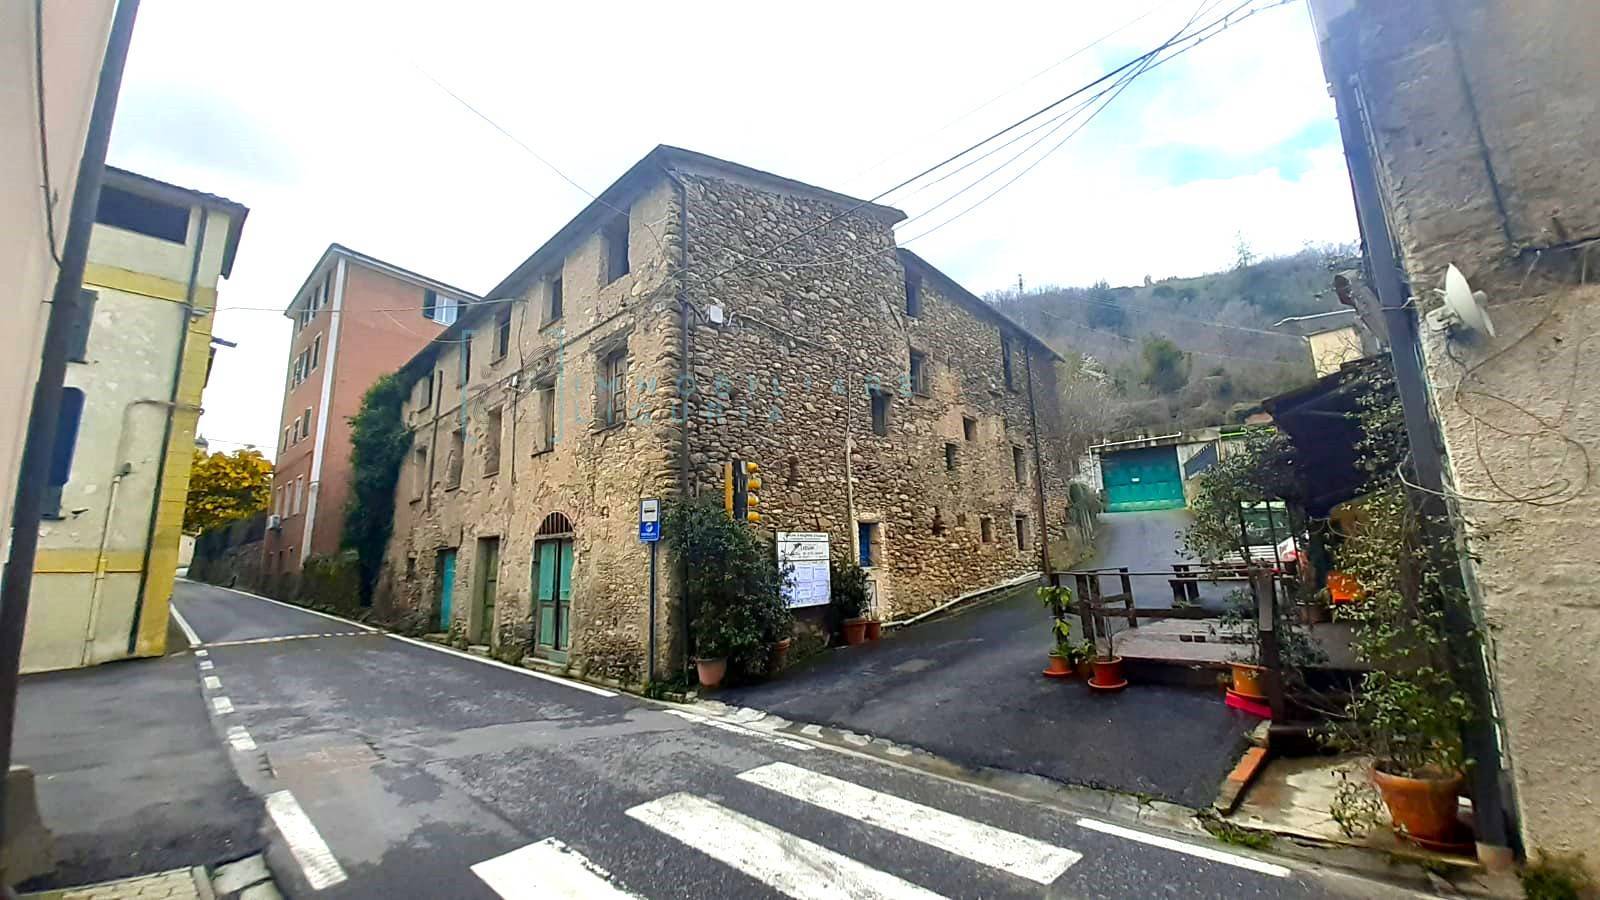 Rustico / Casale in vendita a Borghetto d'Arroscia, 23 locali, prezzo € 57.000 | PortaleAgenzieImmobiliari.it